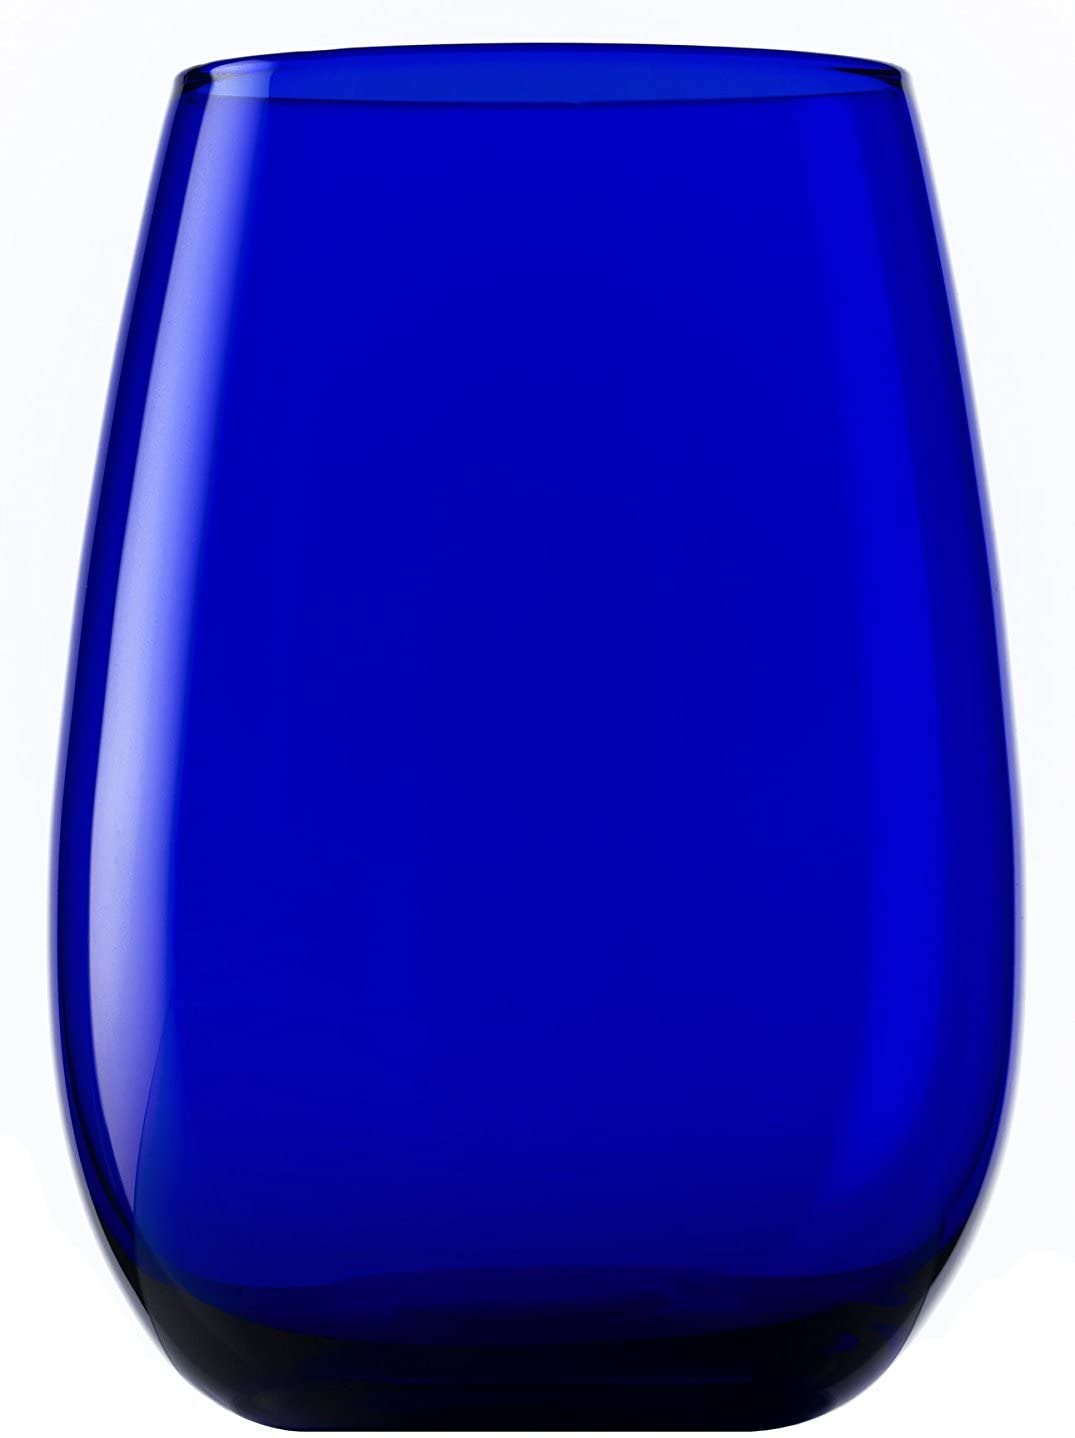 Stölzle Lausitz Elements Mug, 465 ml, Set of 6 Glasses, Dishwasher Safe, Co